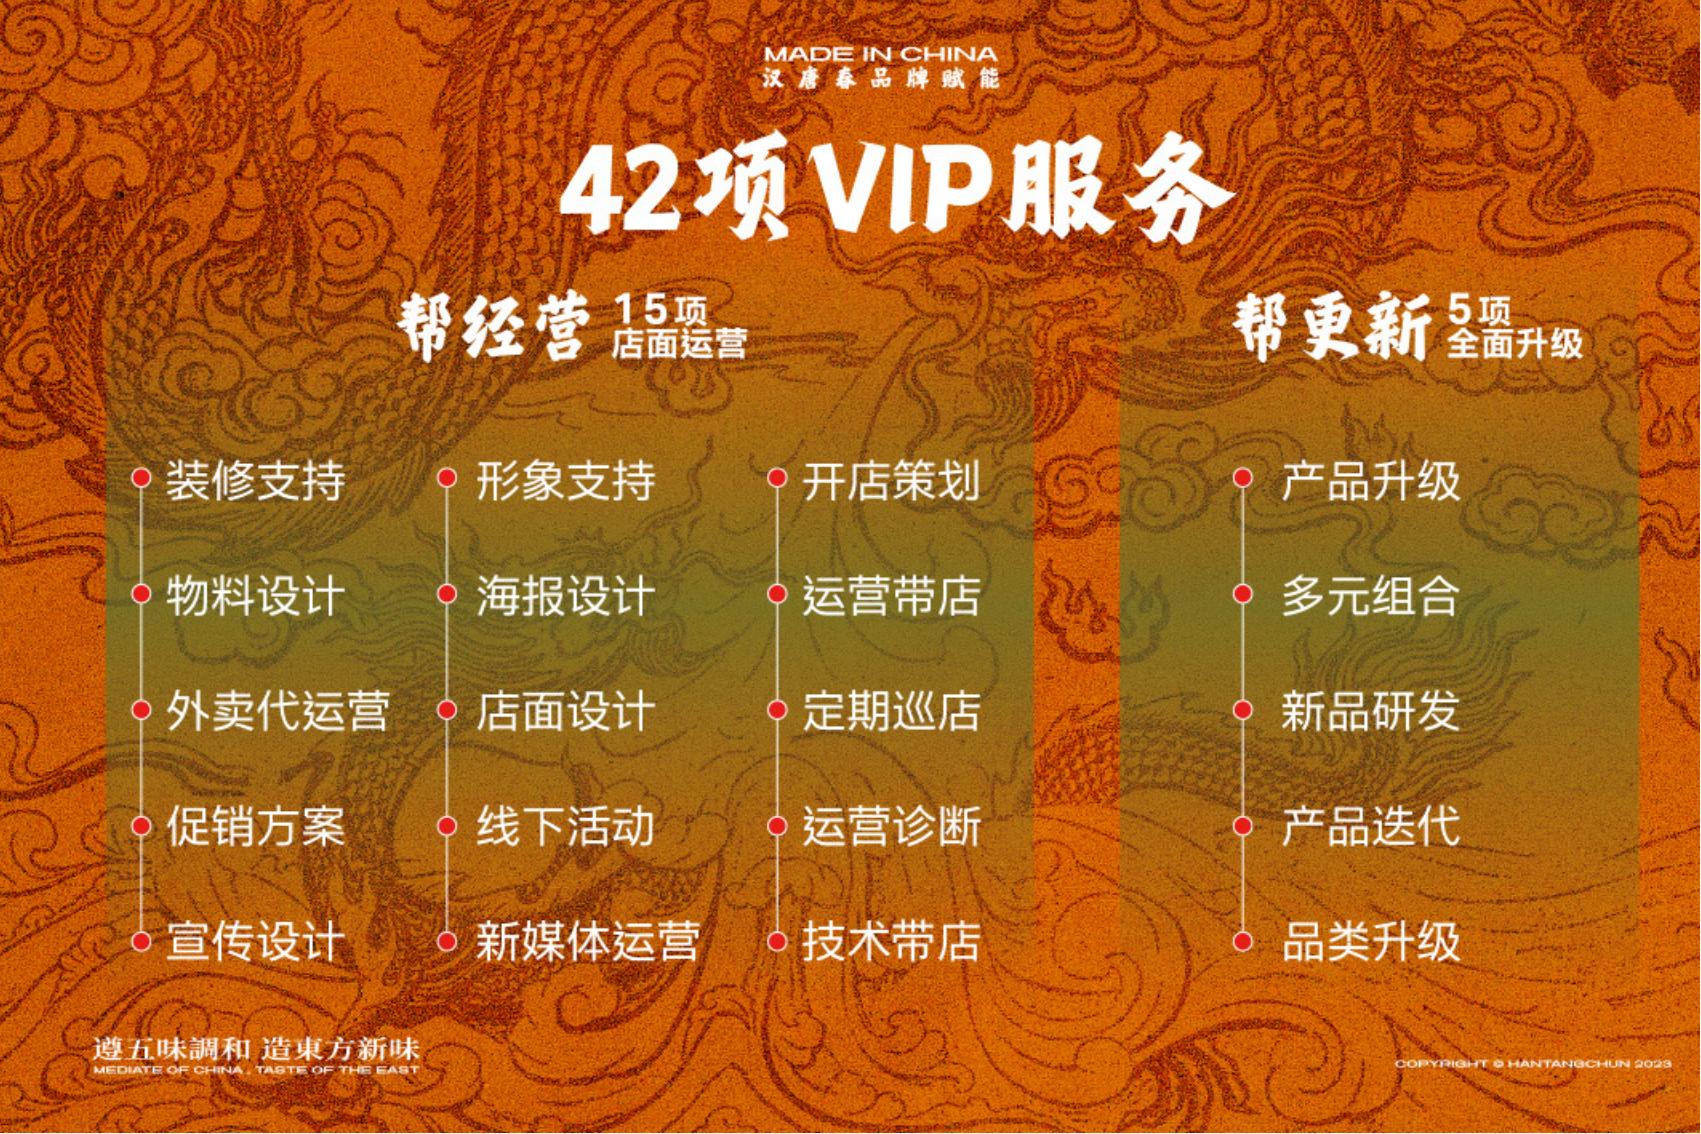 中国汉堡为加盟代理商提供42项VIP服务(图2)